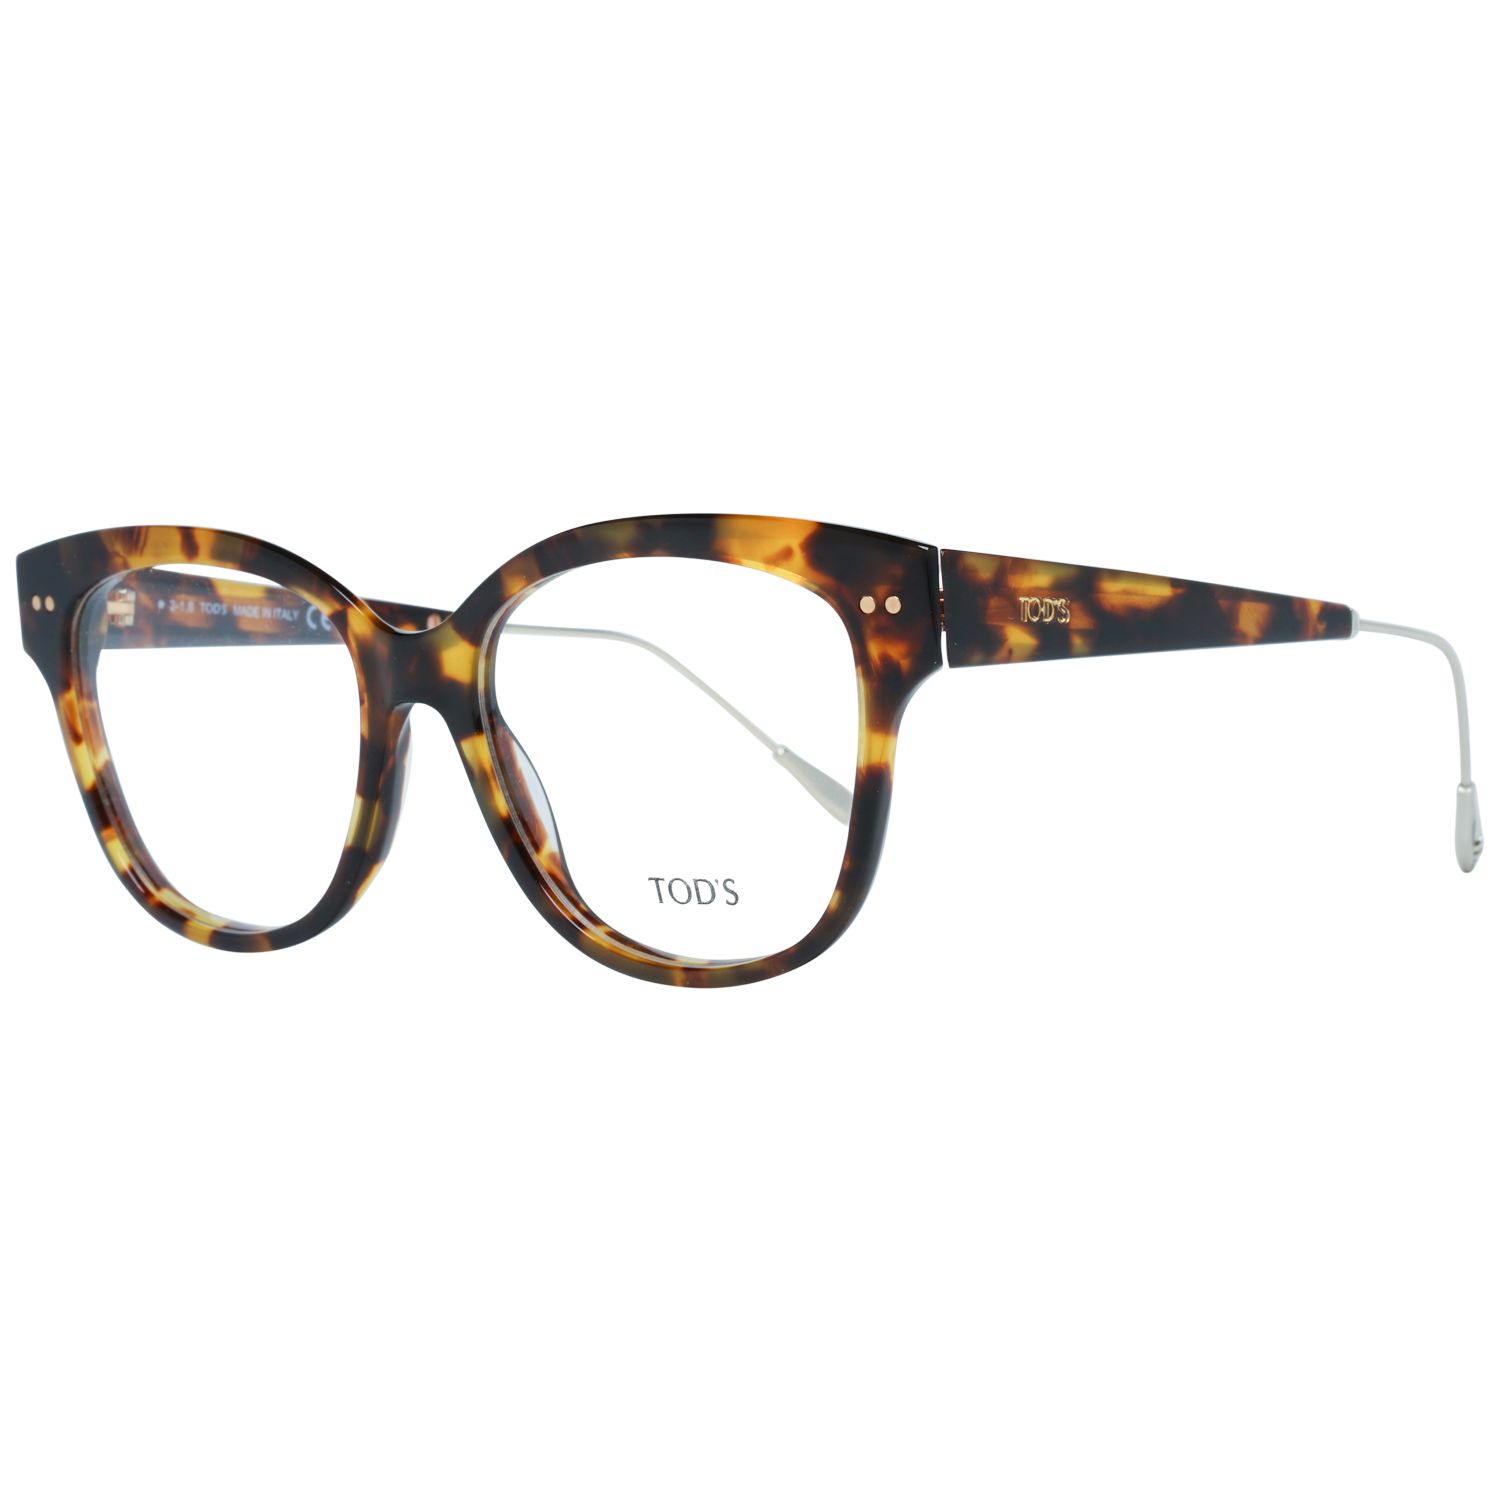 Tods Frames Tods Glasses Women's Brown Havana Round Frames TO5191 056 53mm Eyeglasses Eyewear UK USA Australia 